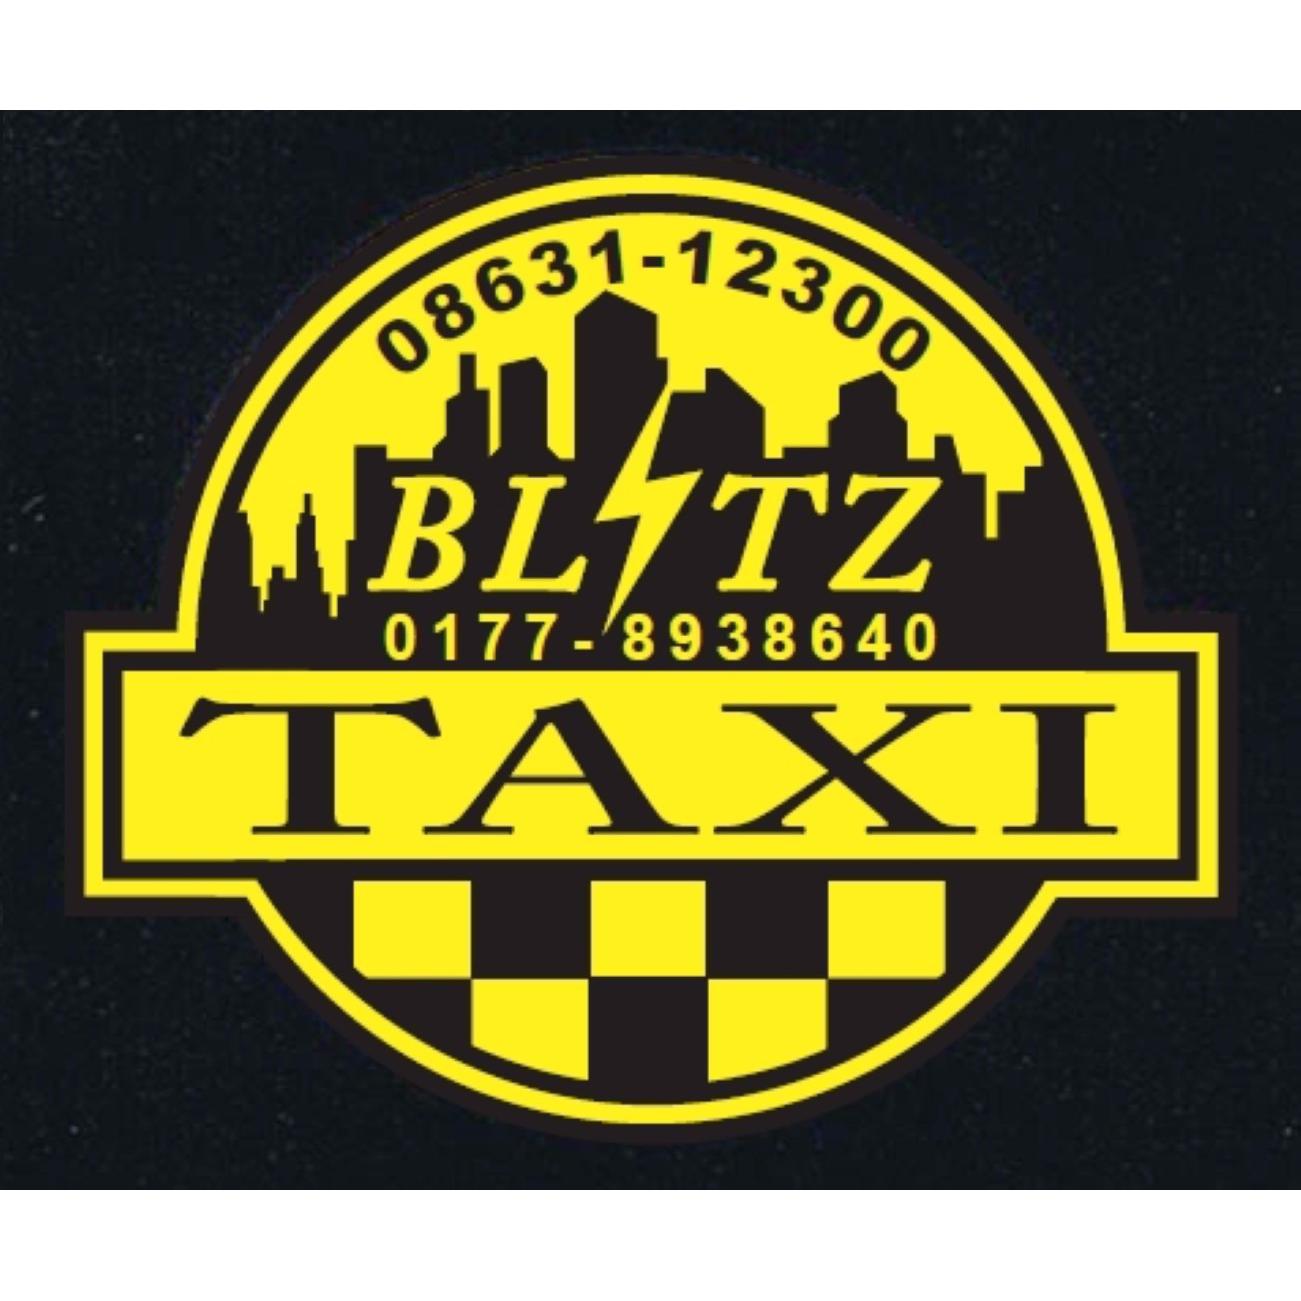 Logo Blitz Taxi